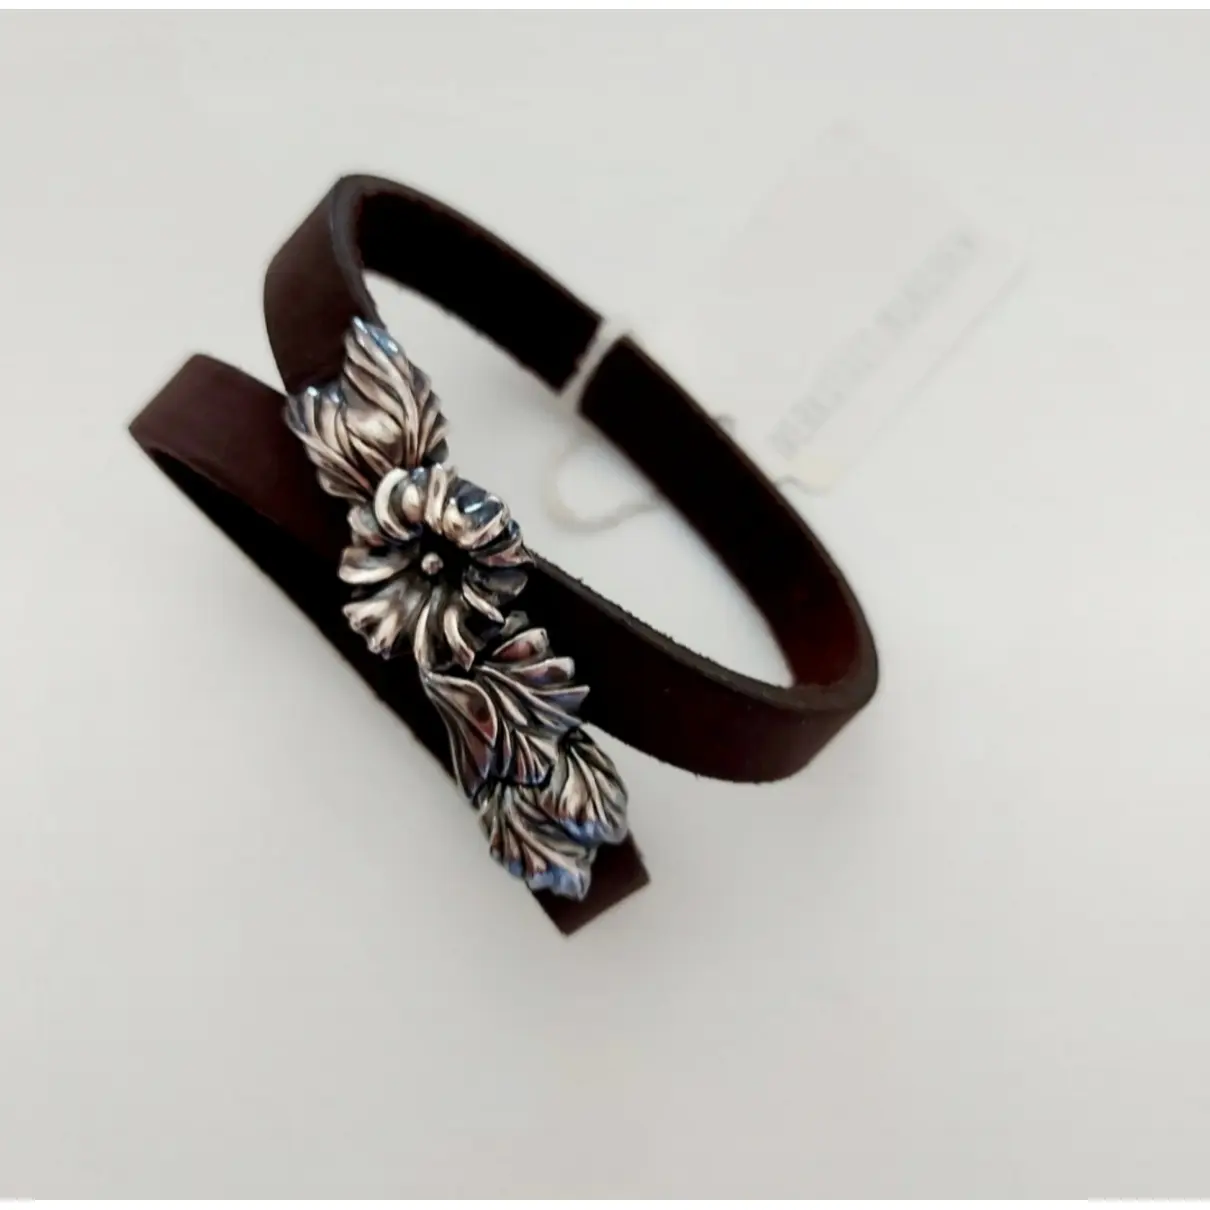 Buy WERKSTATT MÜNCHEN Leather bracelet online